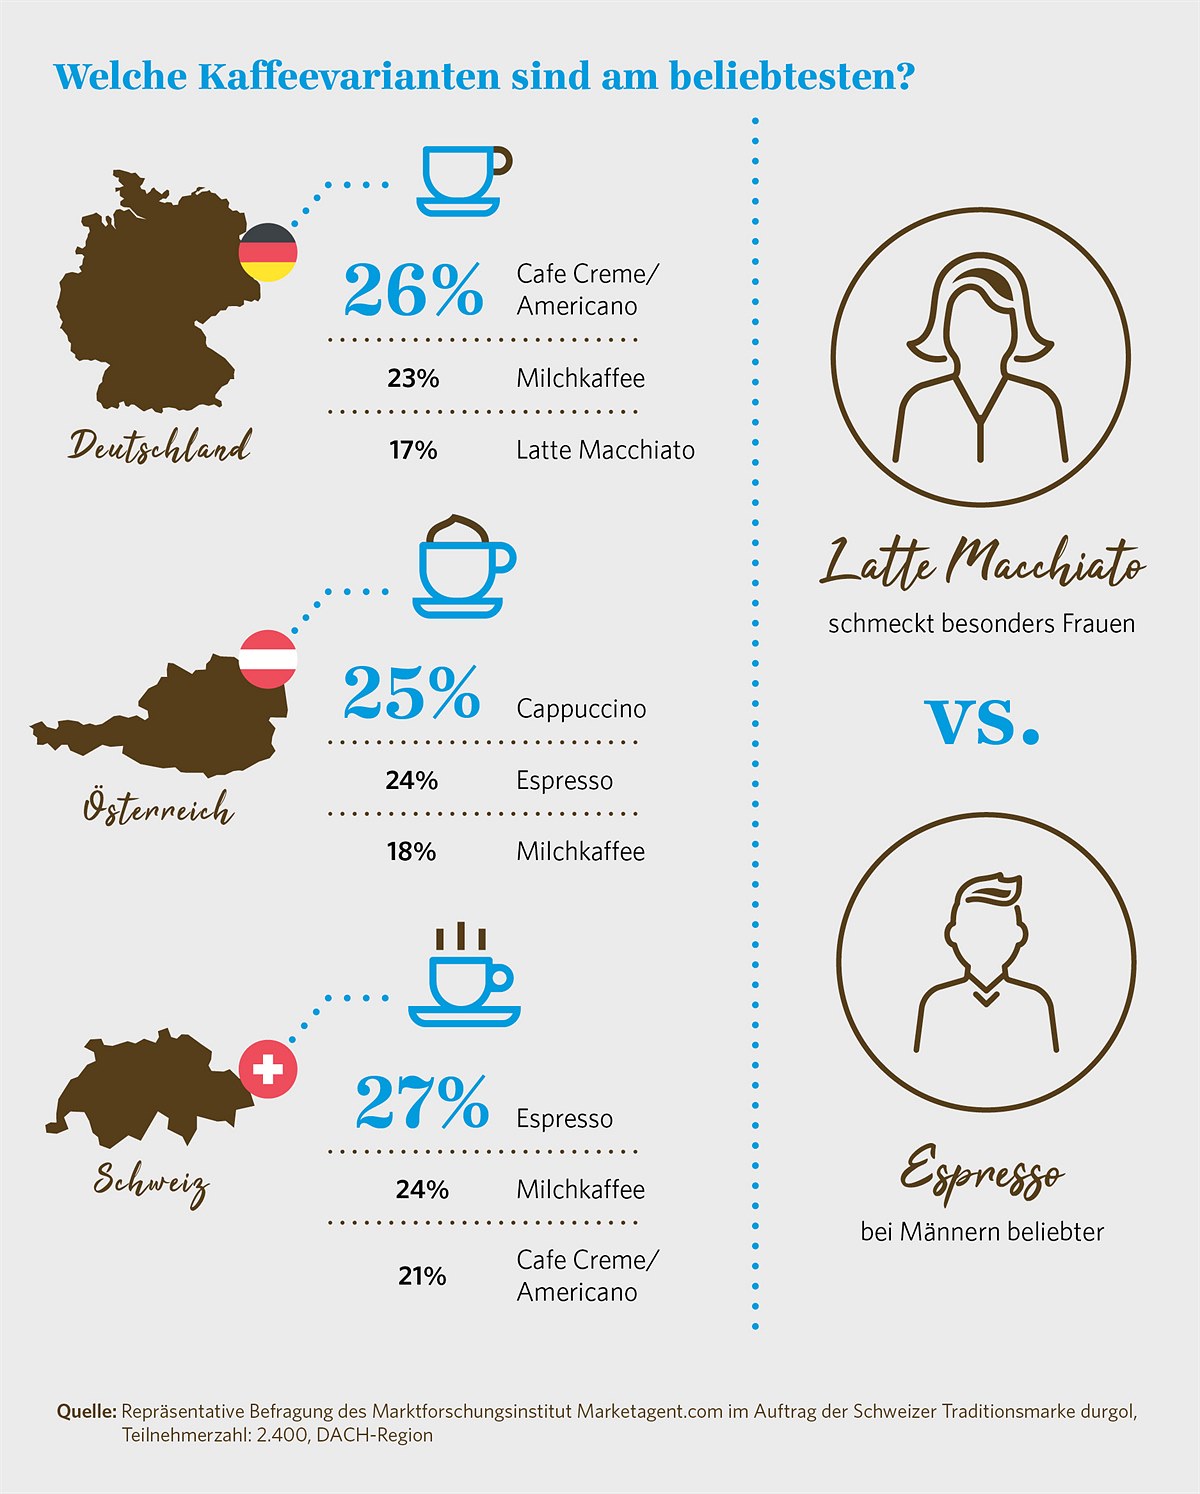 Infografik: Die beliebtesten Kaffeevarianten in Österreich, Deutschland und der Schweiz